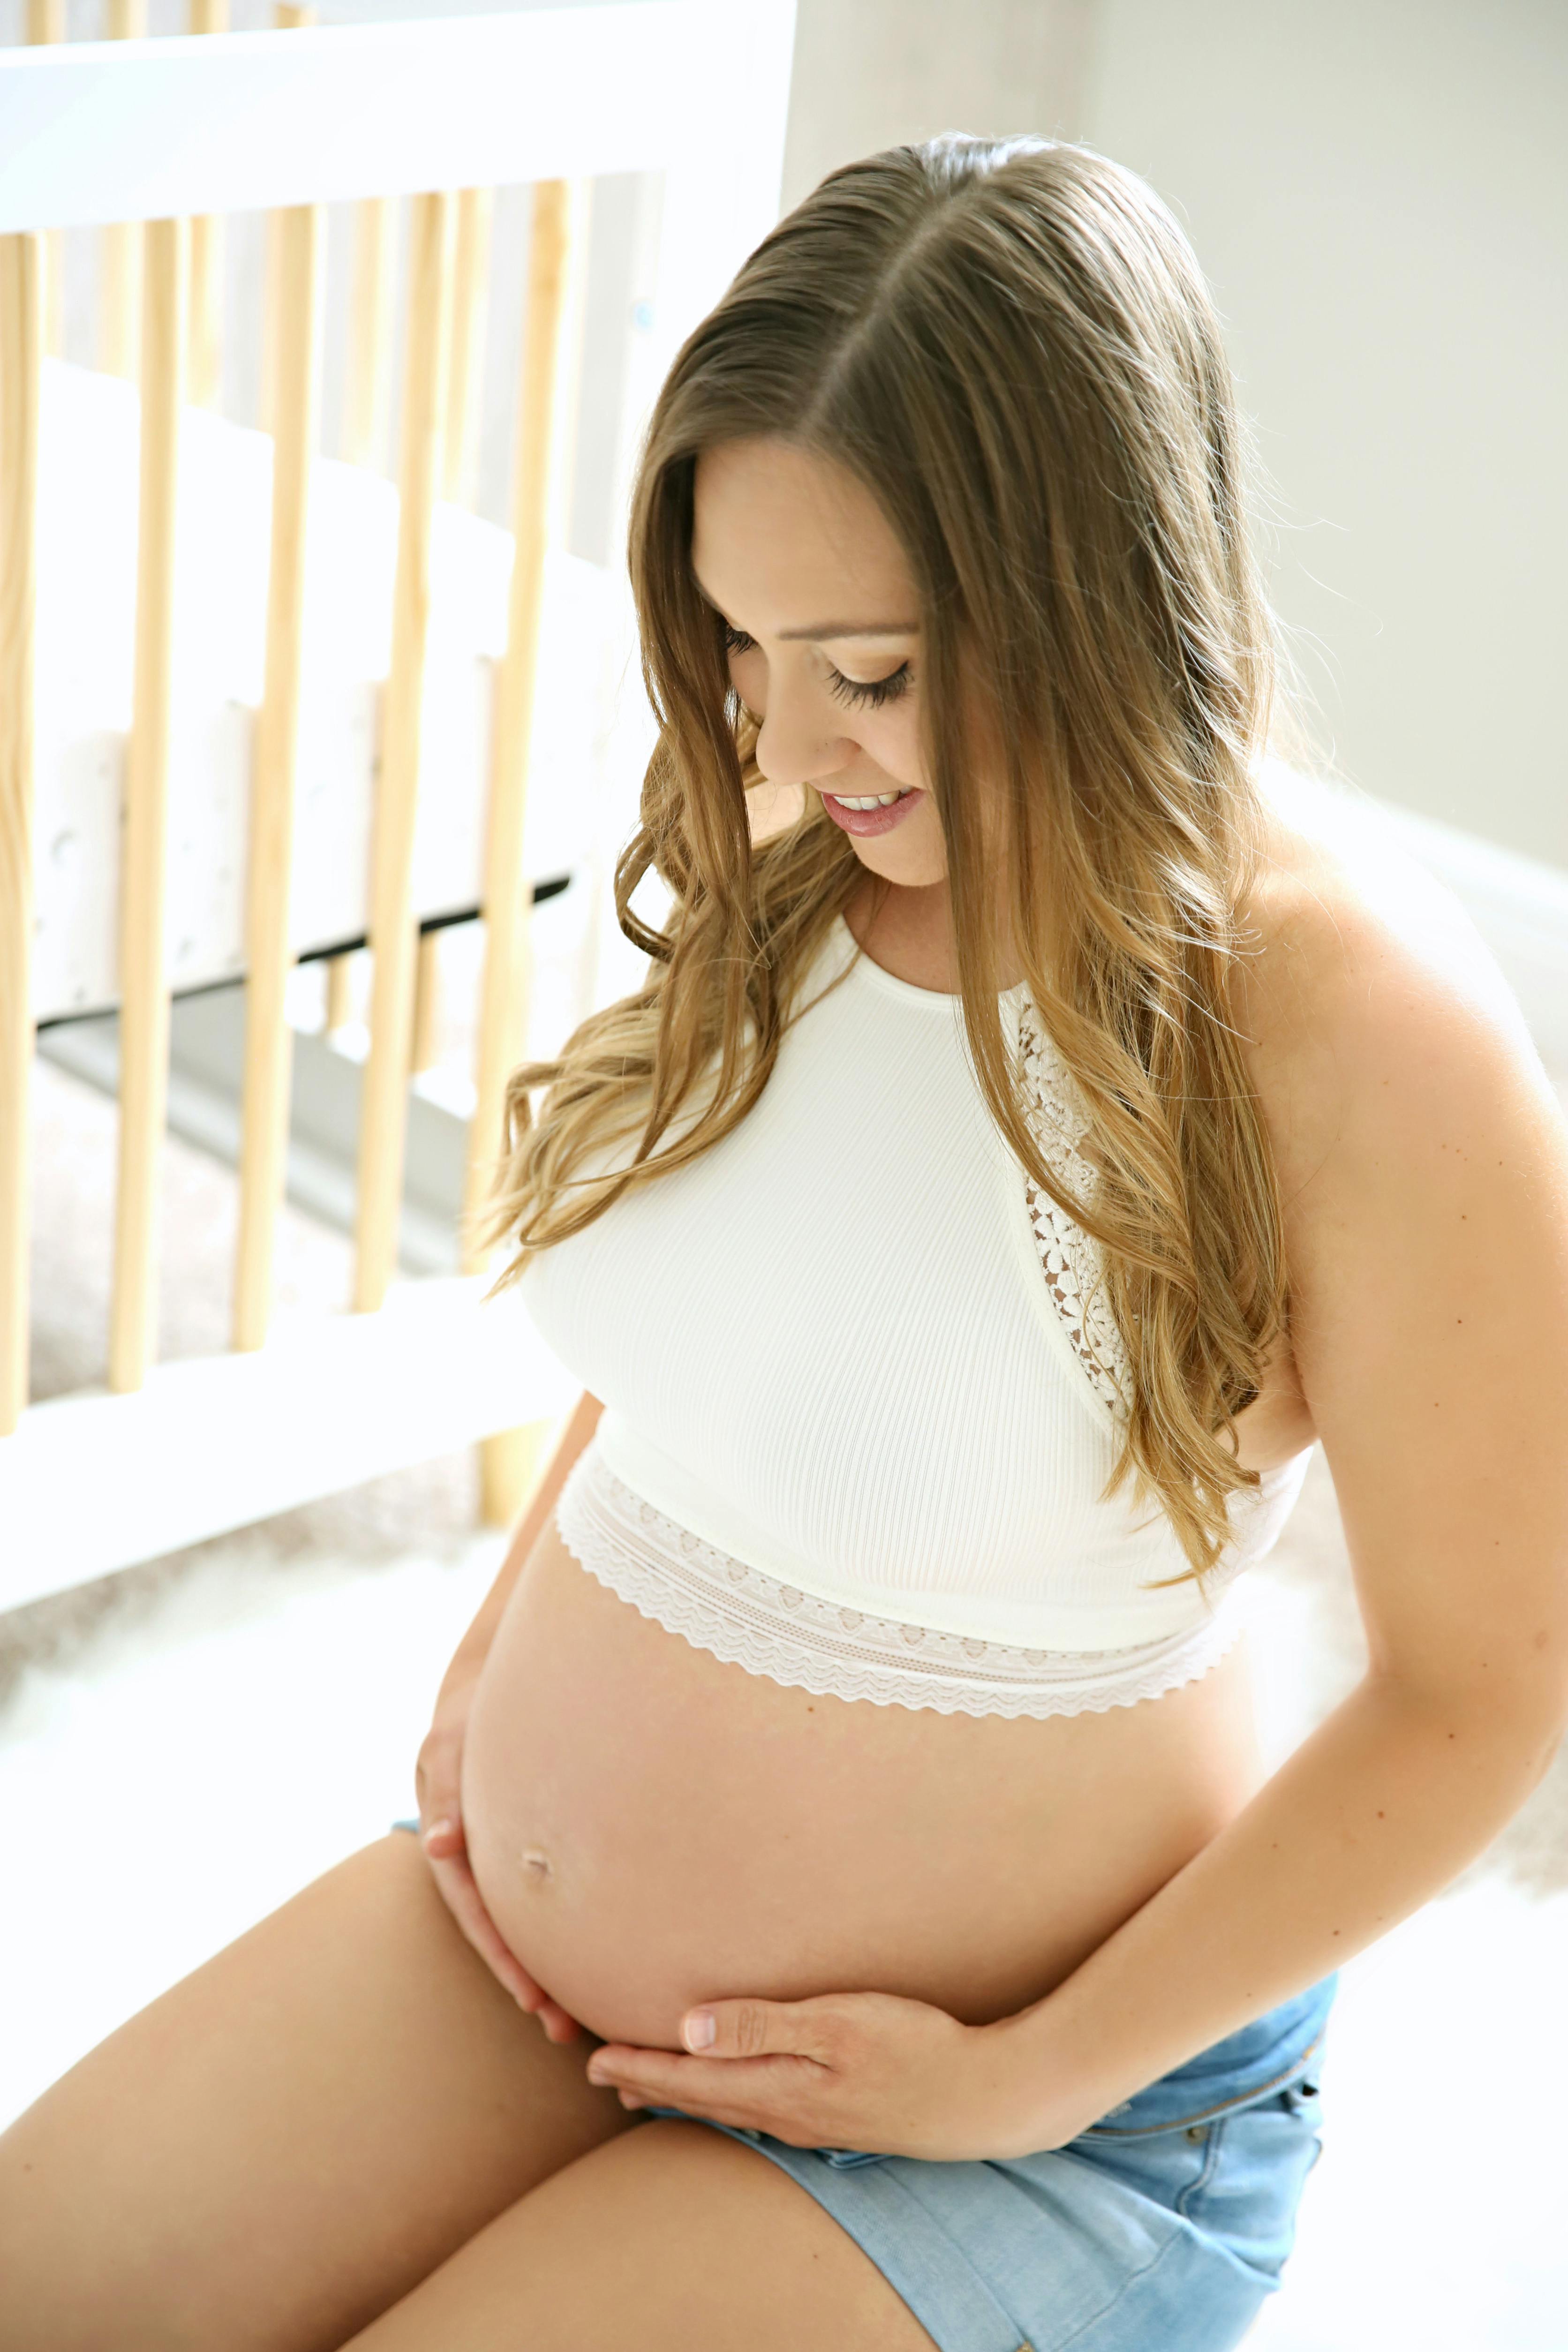 Prenatal Program: Prepare for Birth